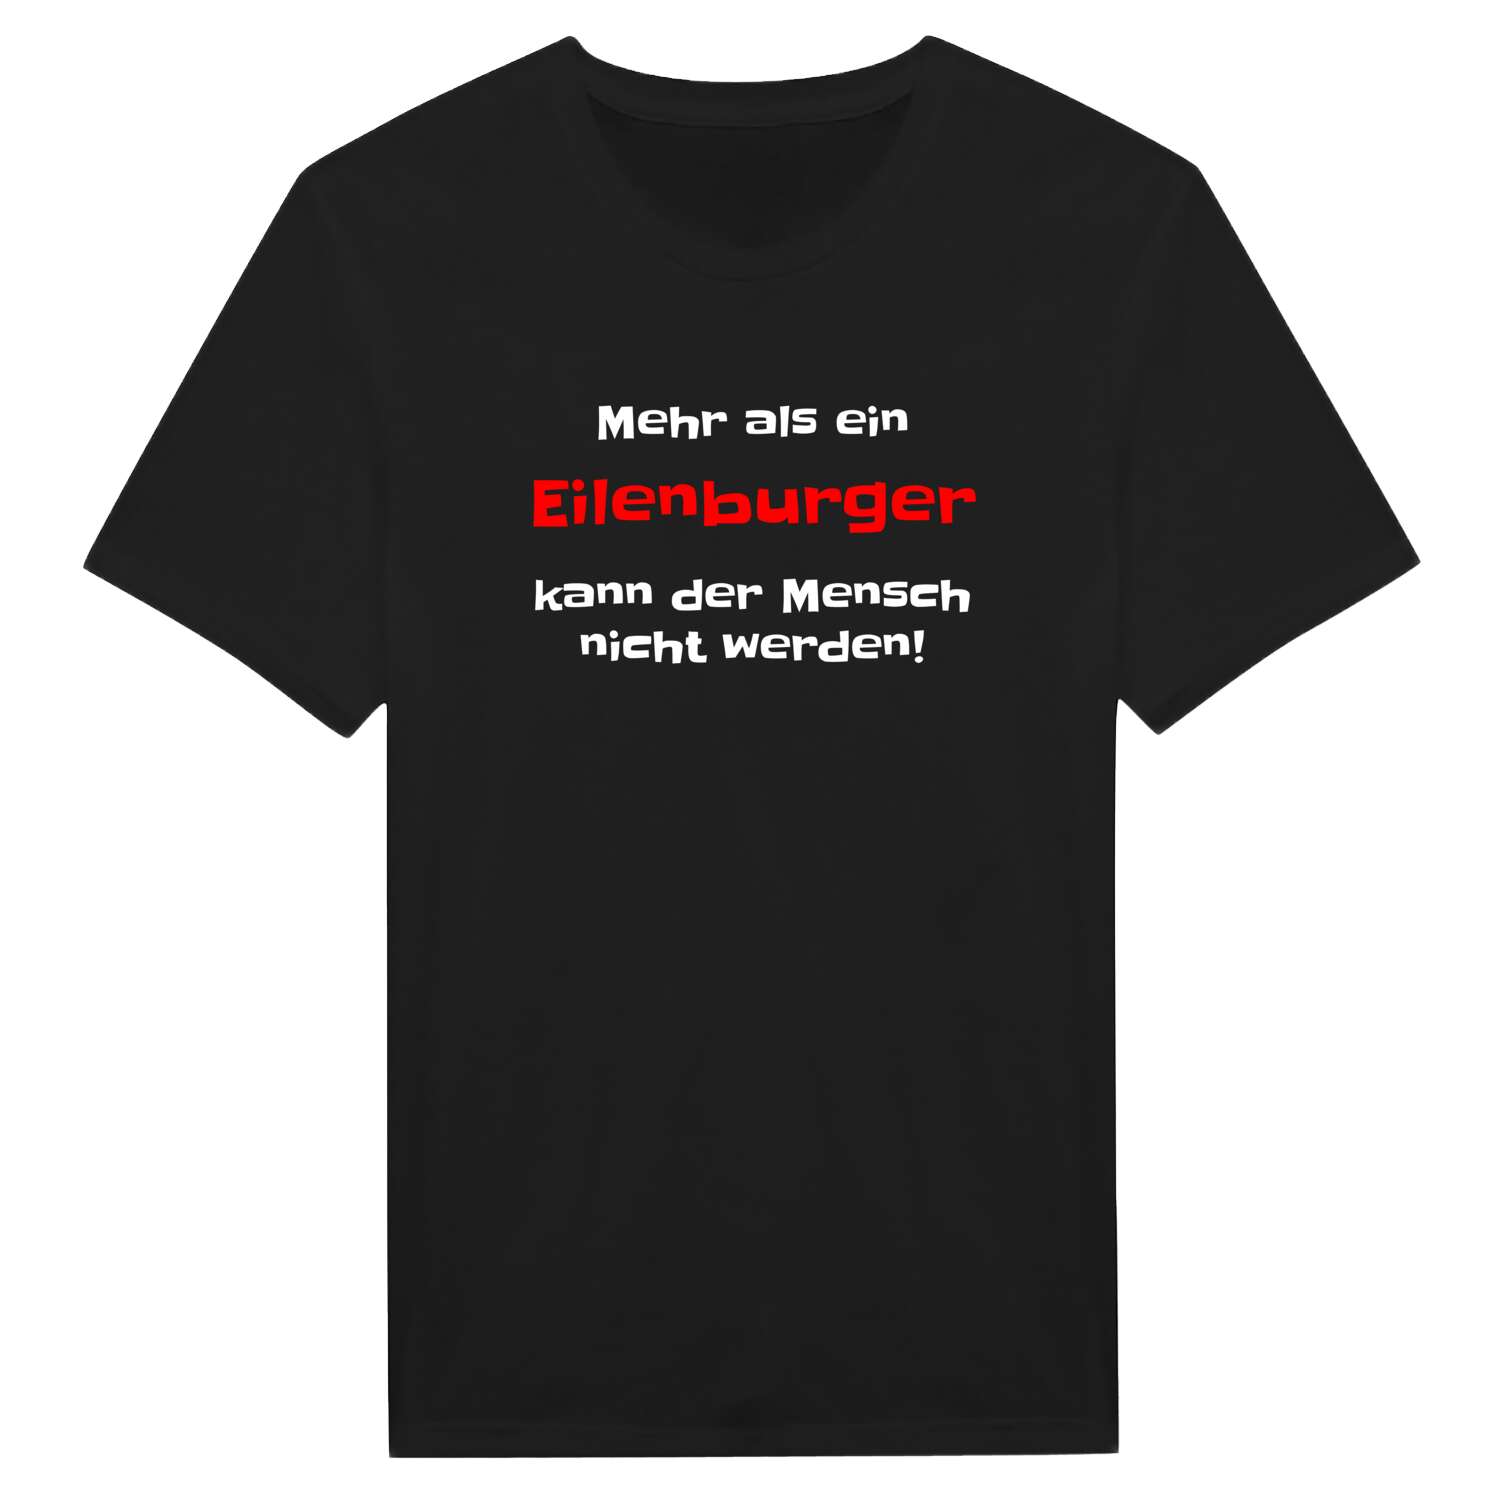 Eilenburg T-Shirt »Mehr als ein«